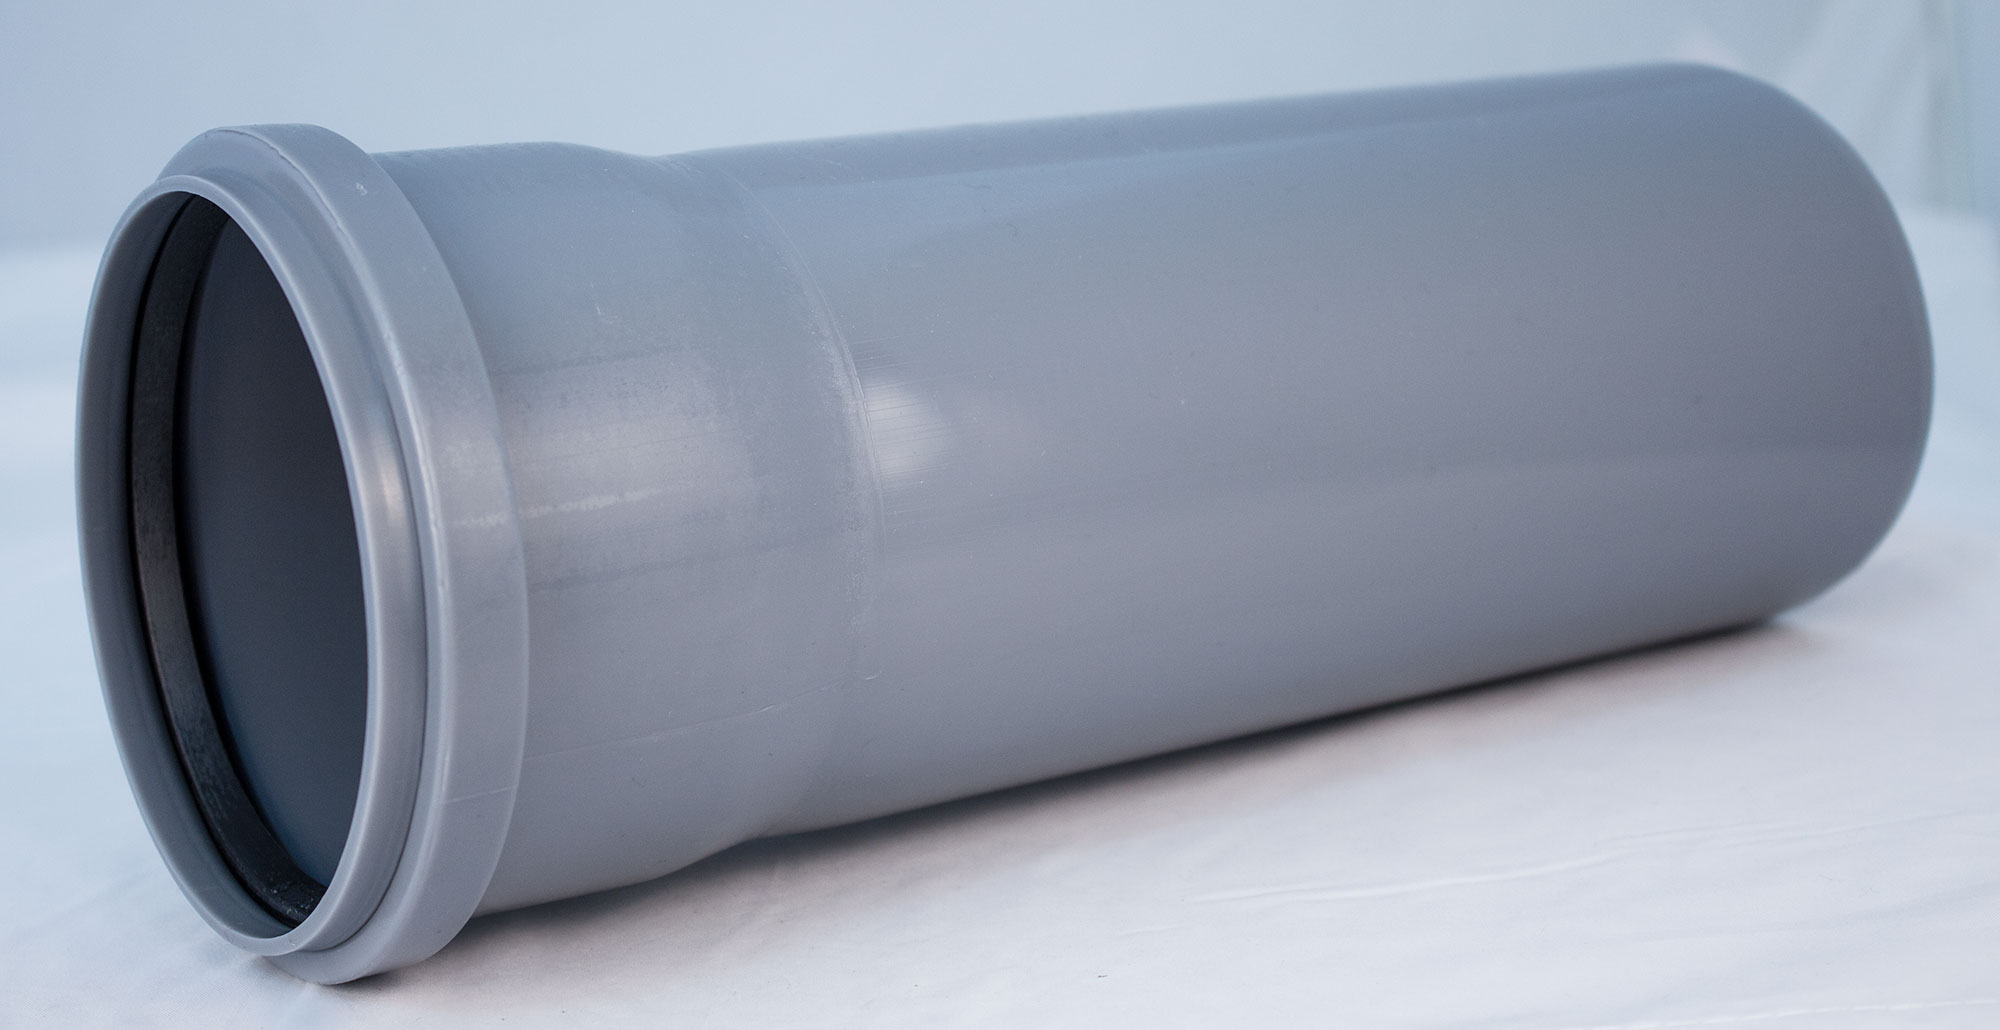 Как установить пластиковую канализационную трубу диаметром 250 мм